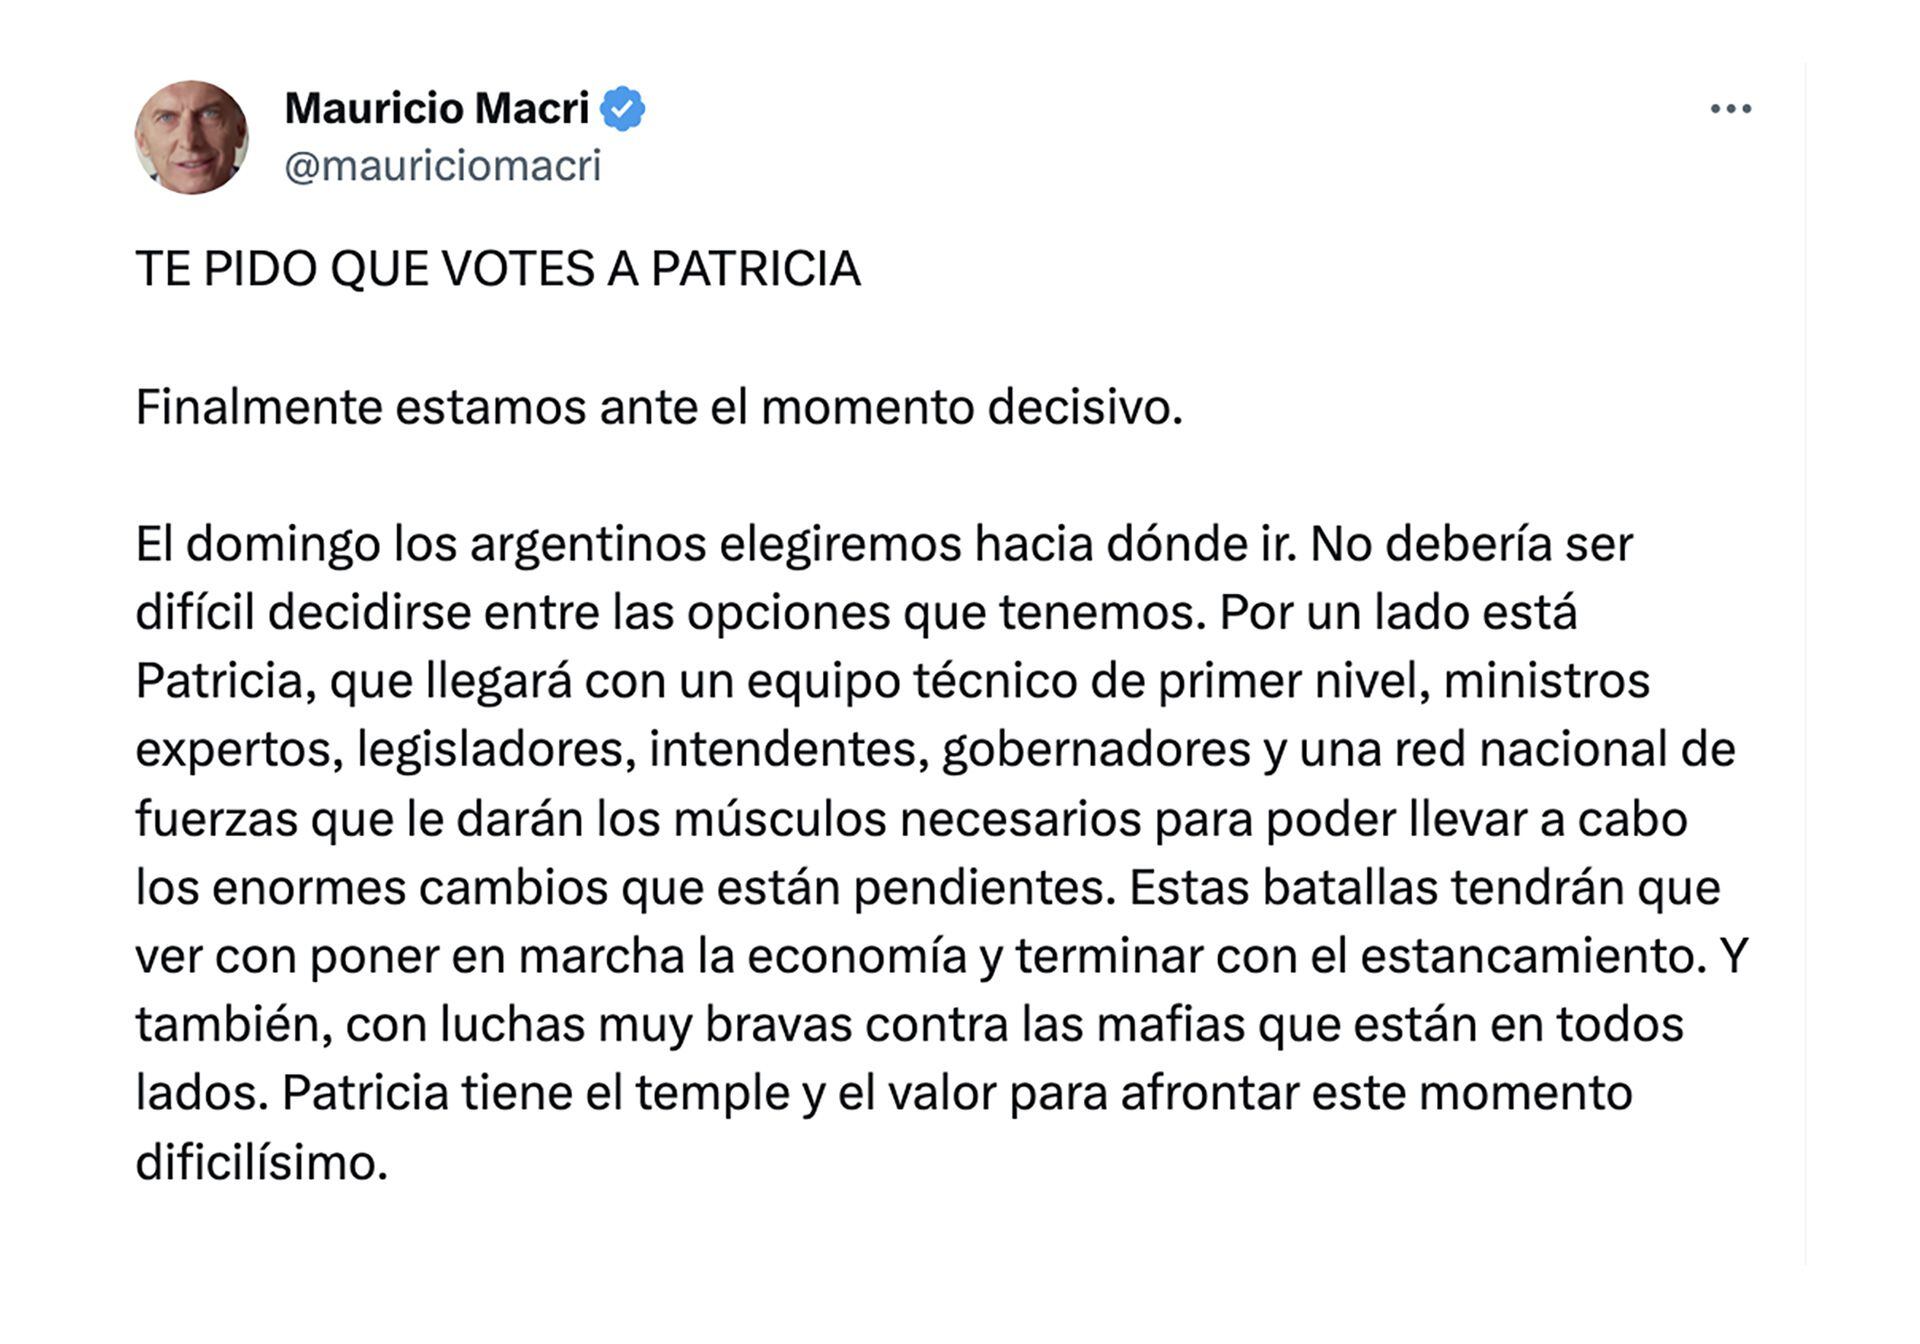 La carta de Mauricio Macri publicada en sus redes sociales